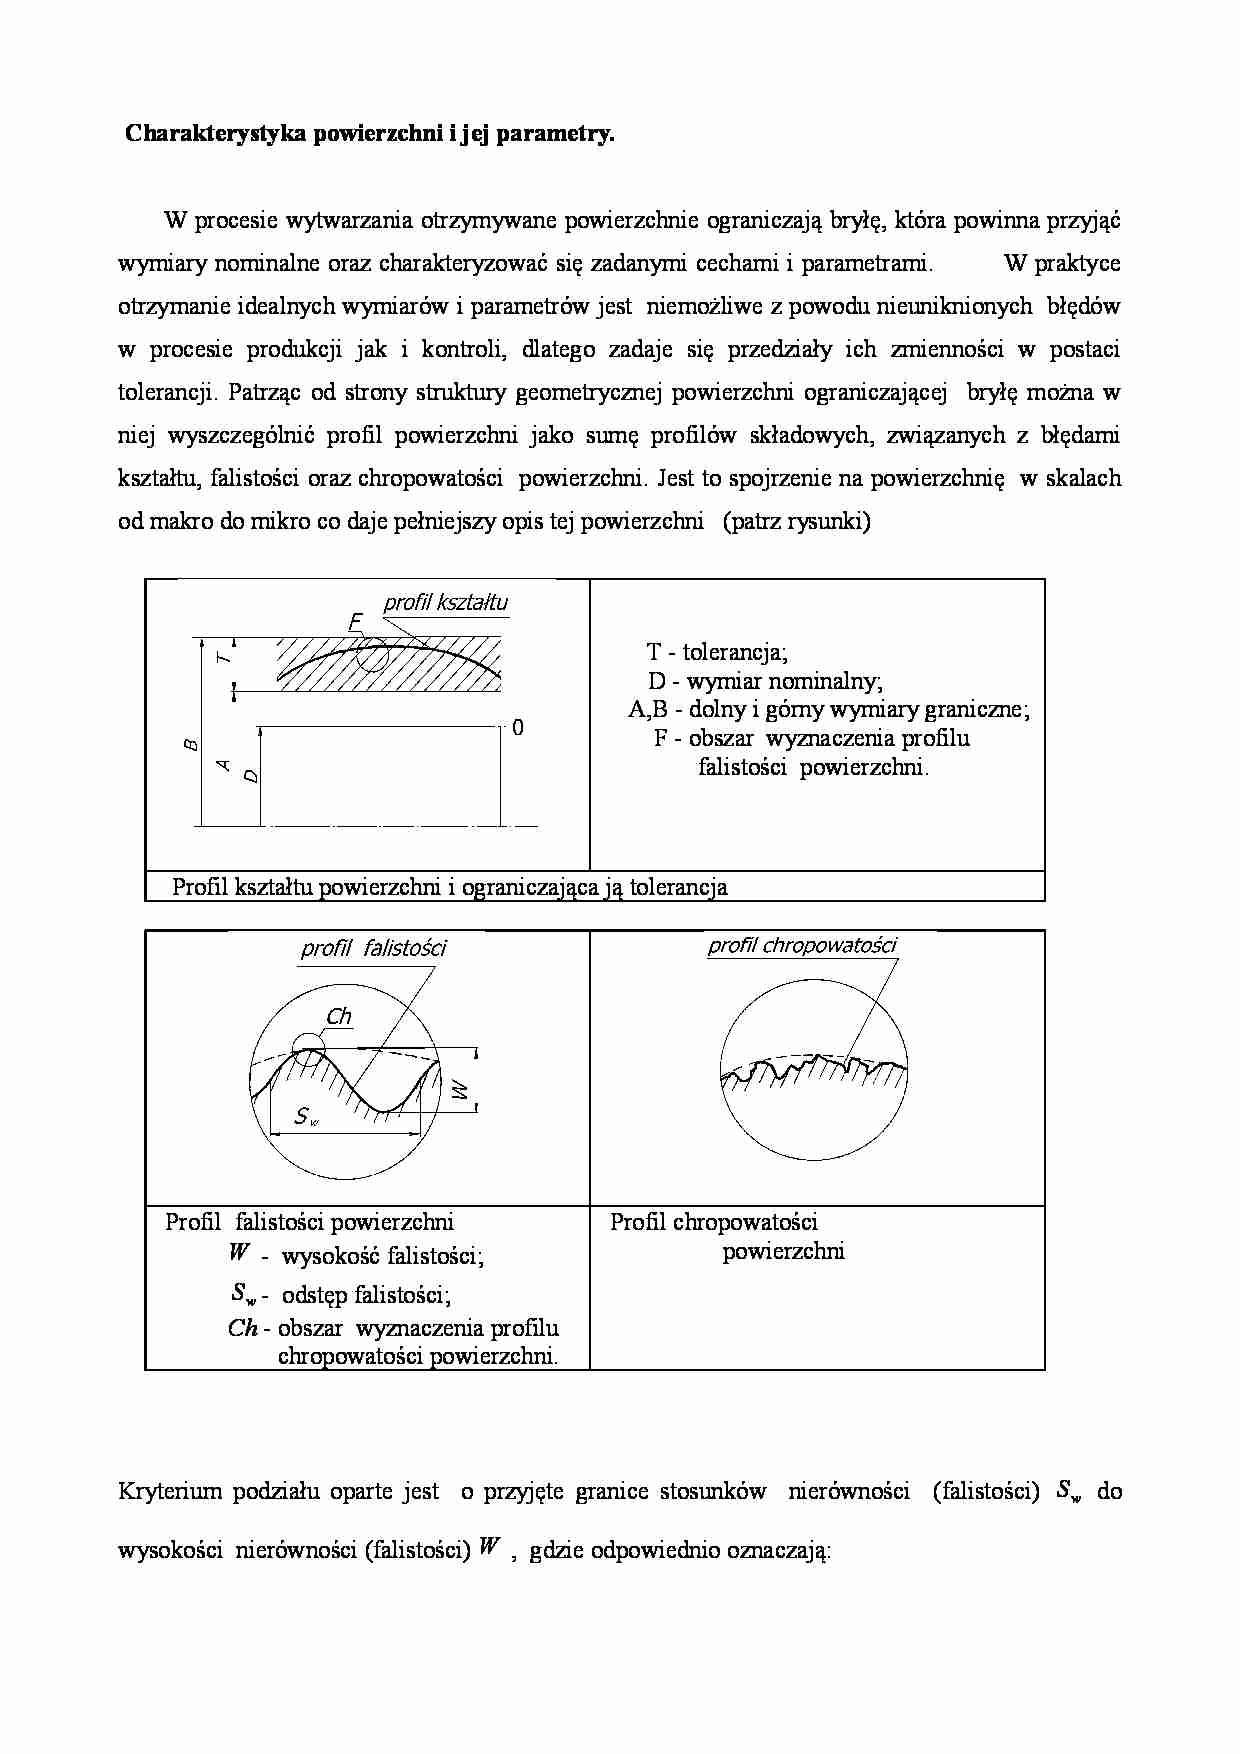 Charakterystyka powierzchni i jej parametry - strona 1